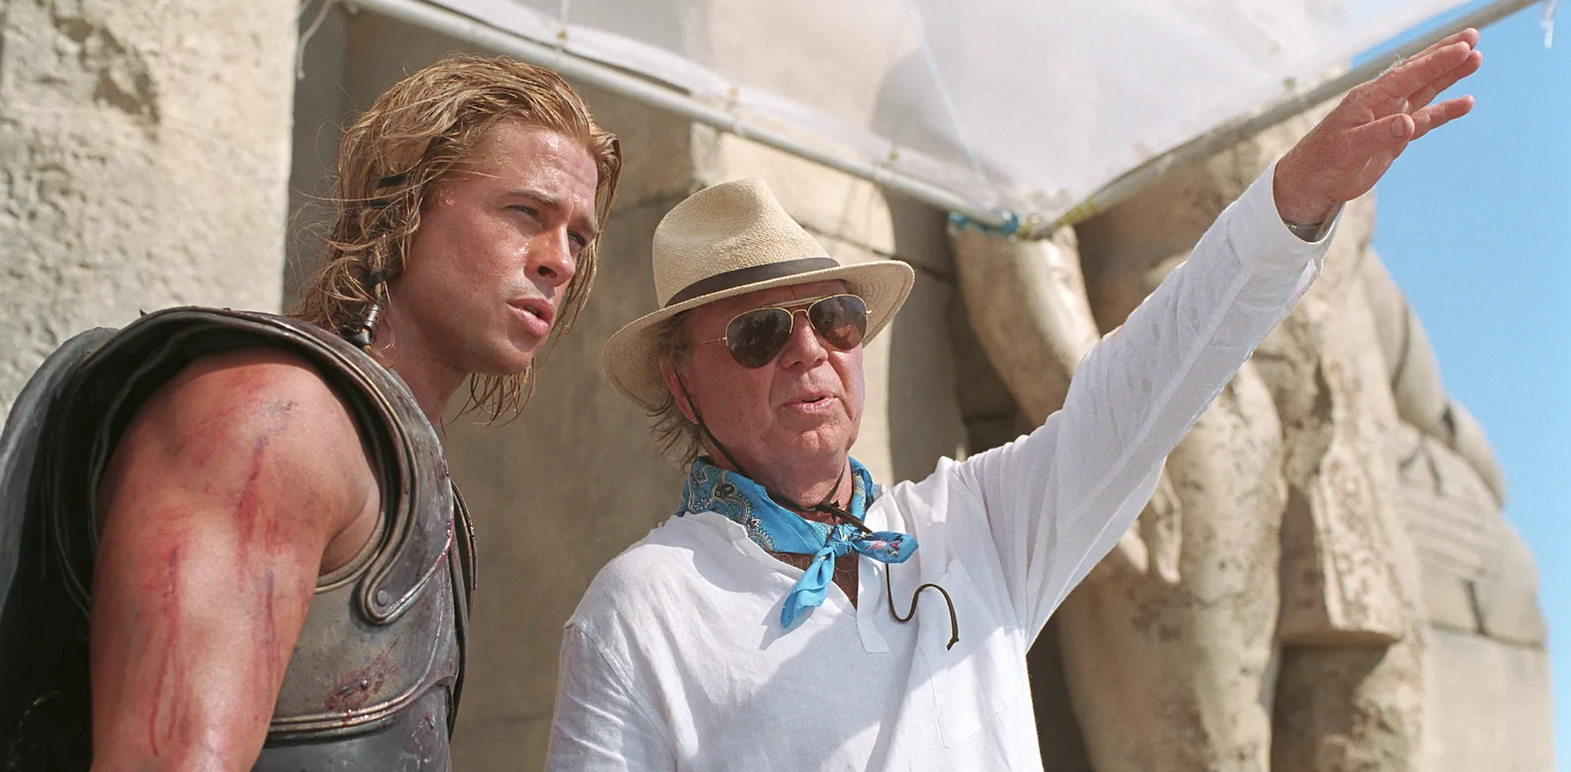 Addio a Wolfgang Petersen, il regista di "Troy" e "La storia infinita" è morto a 81 anni